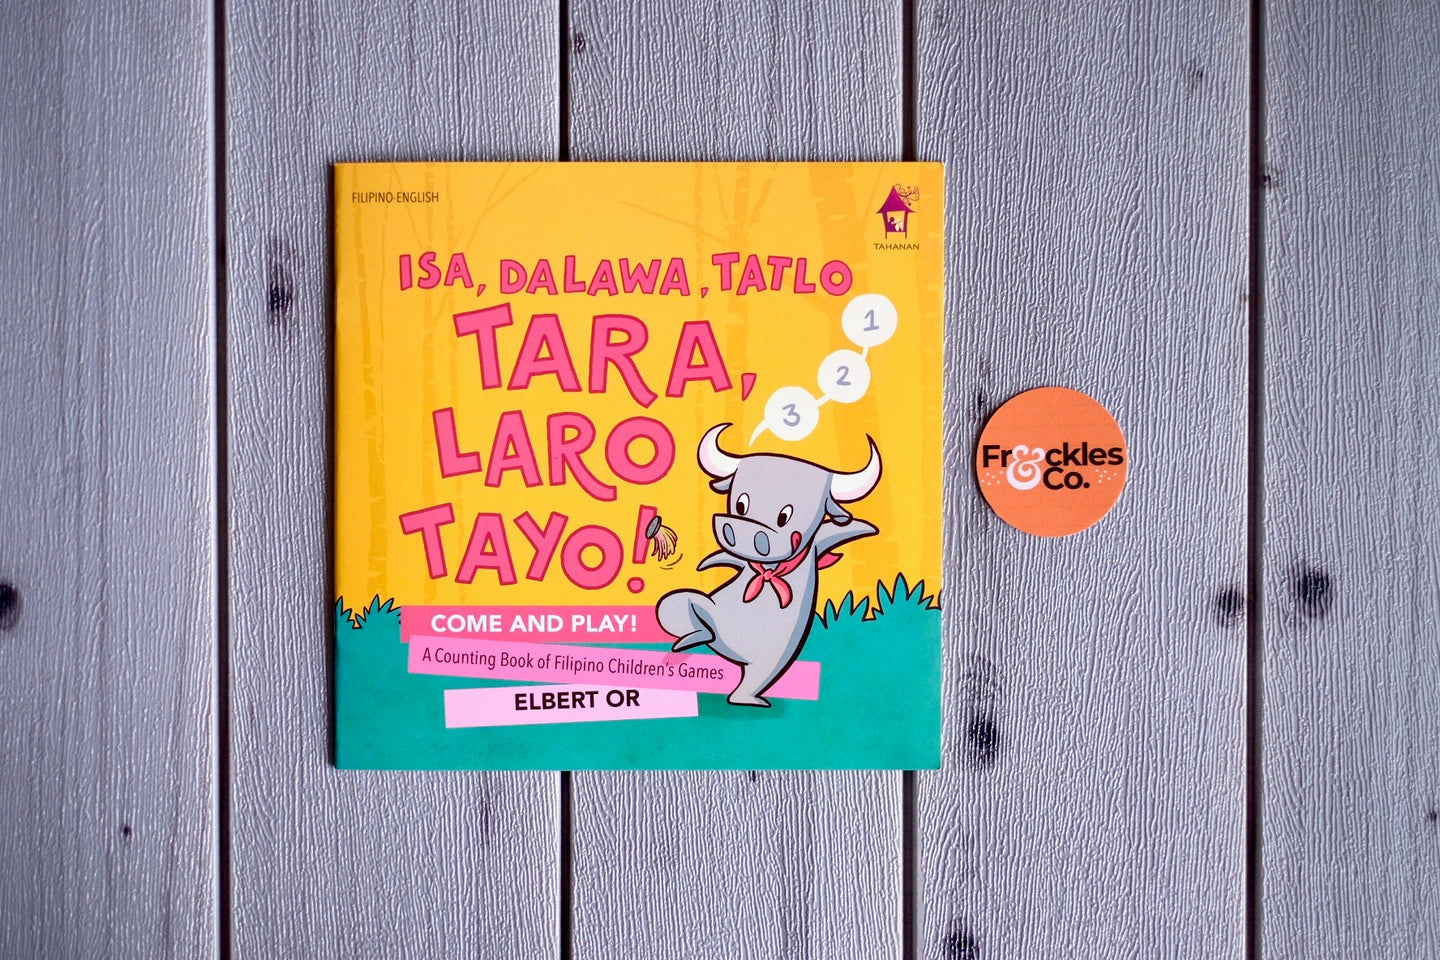 Isa Dalaw Tatlo. Tara Laro Tayo